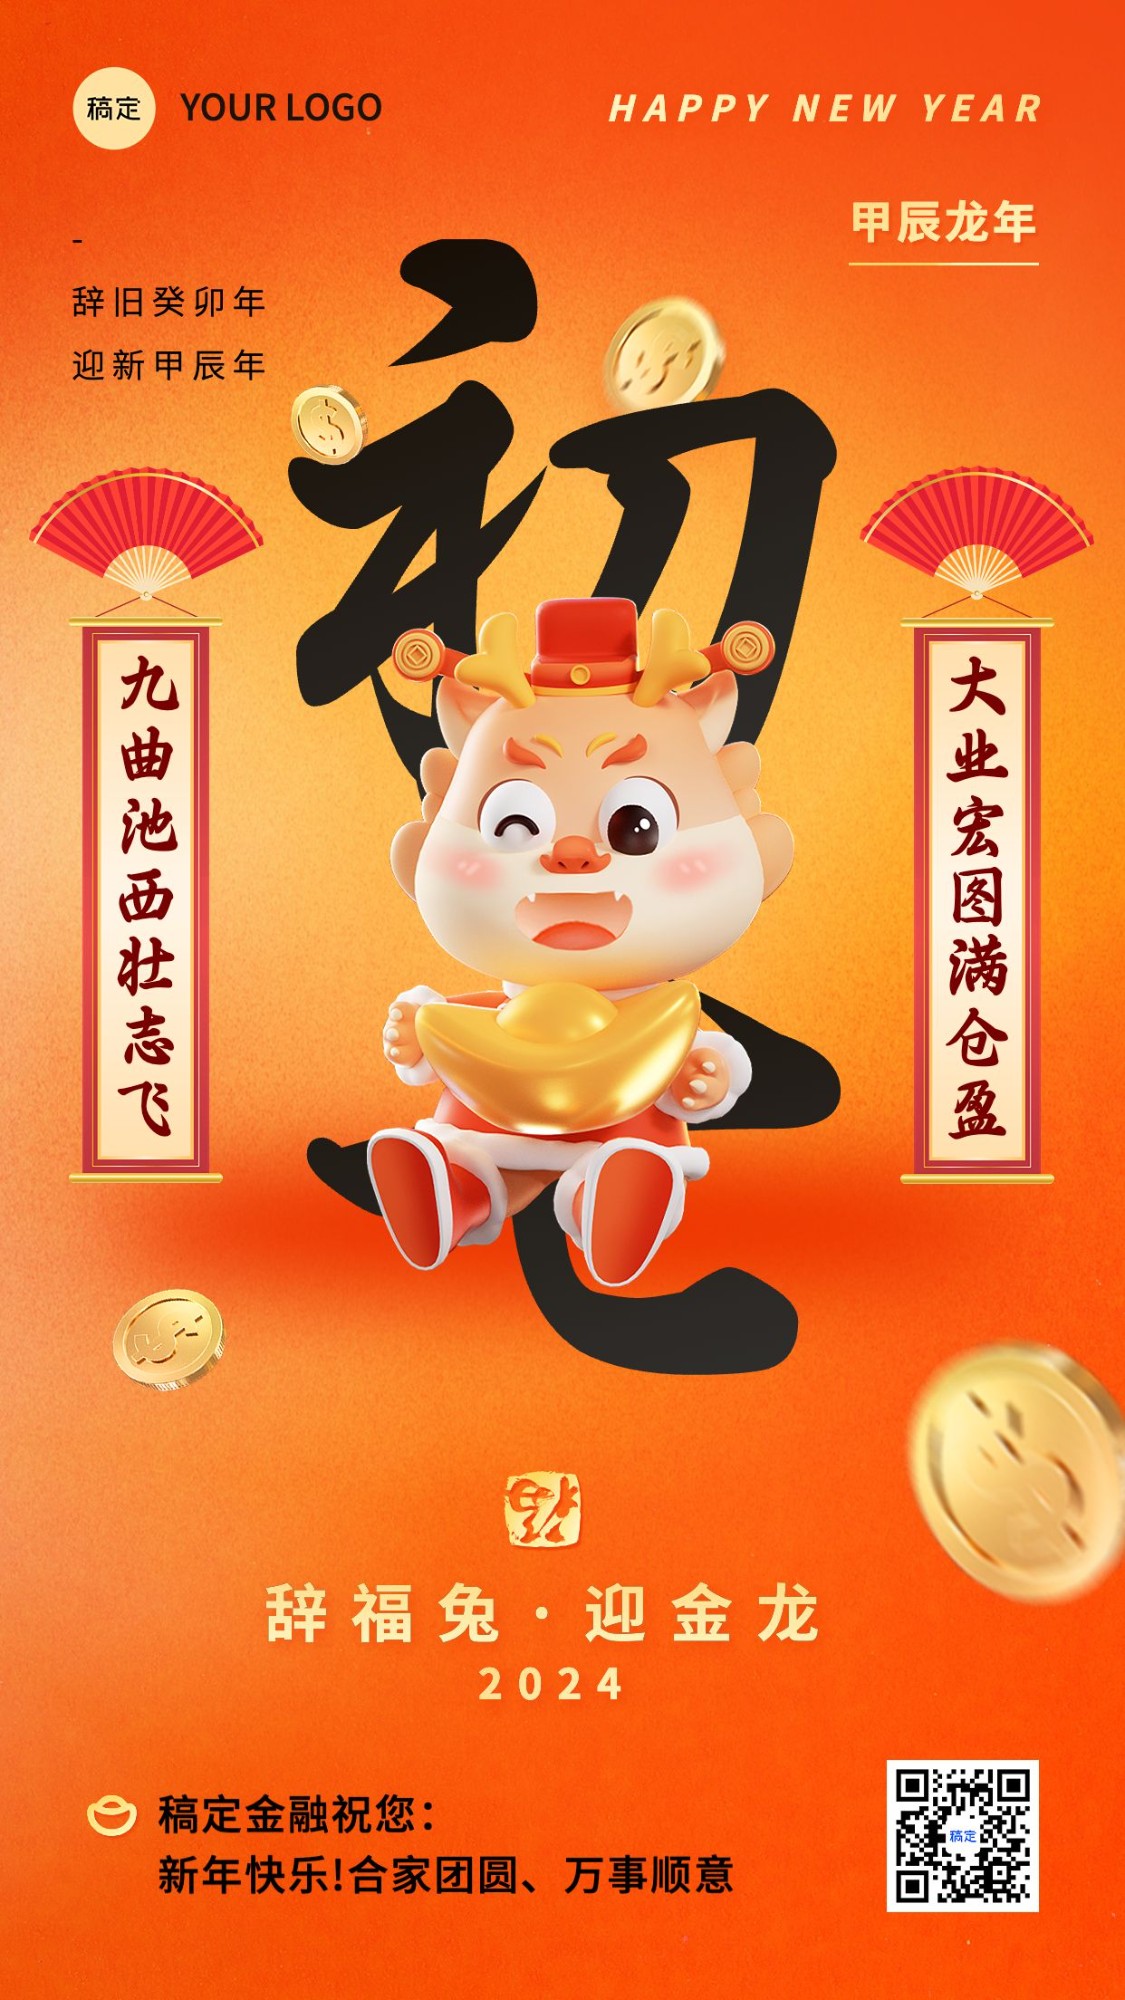 春节新年祝福正月初七套系手机海报预览效果